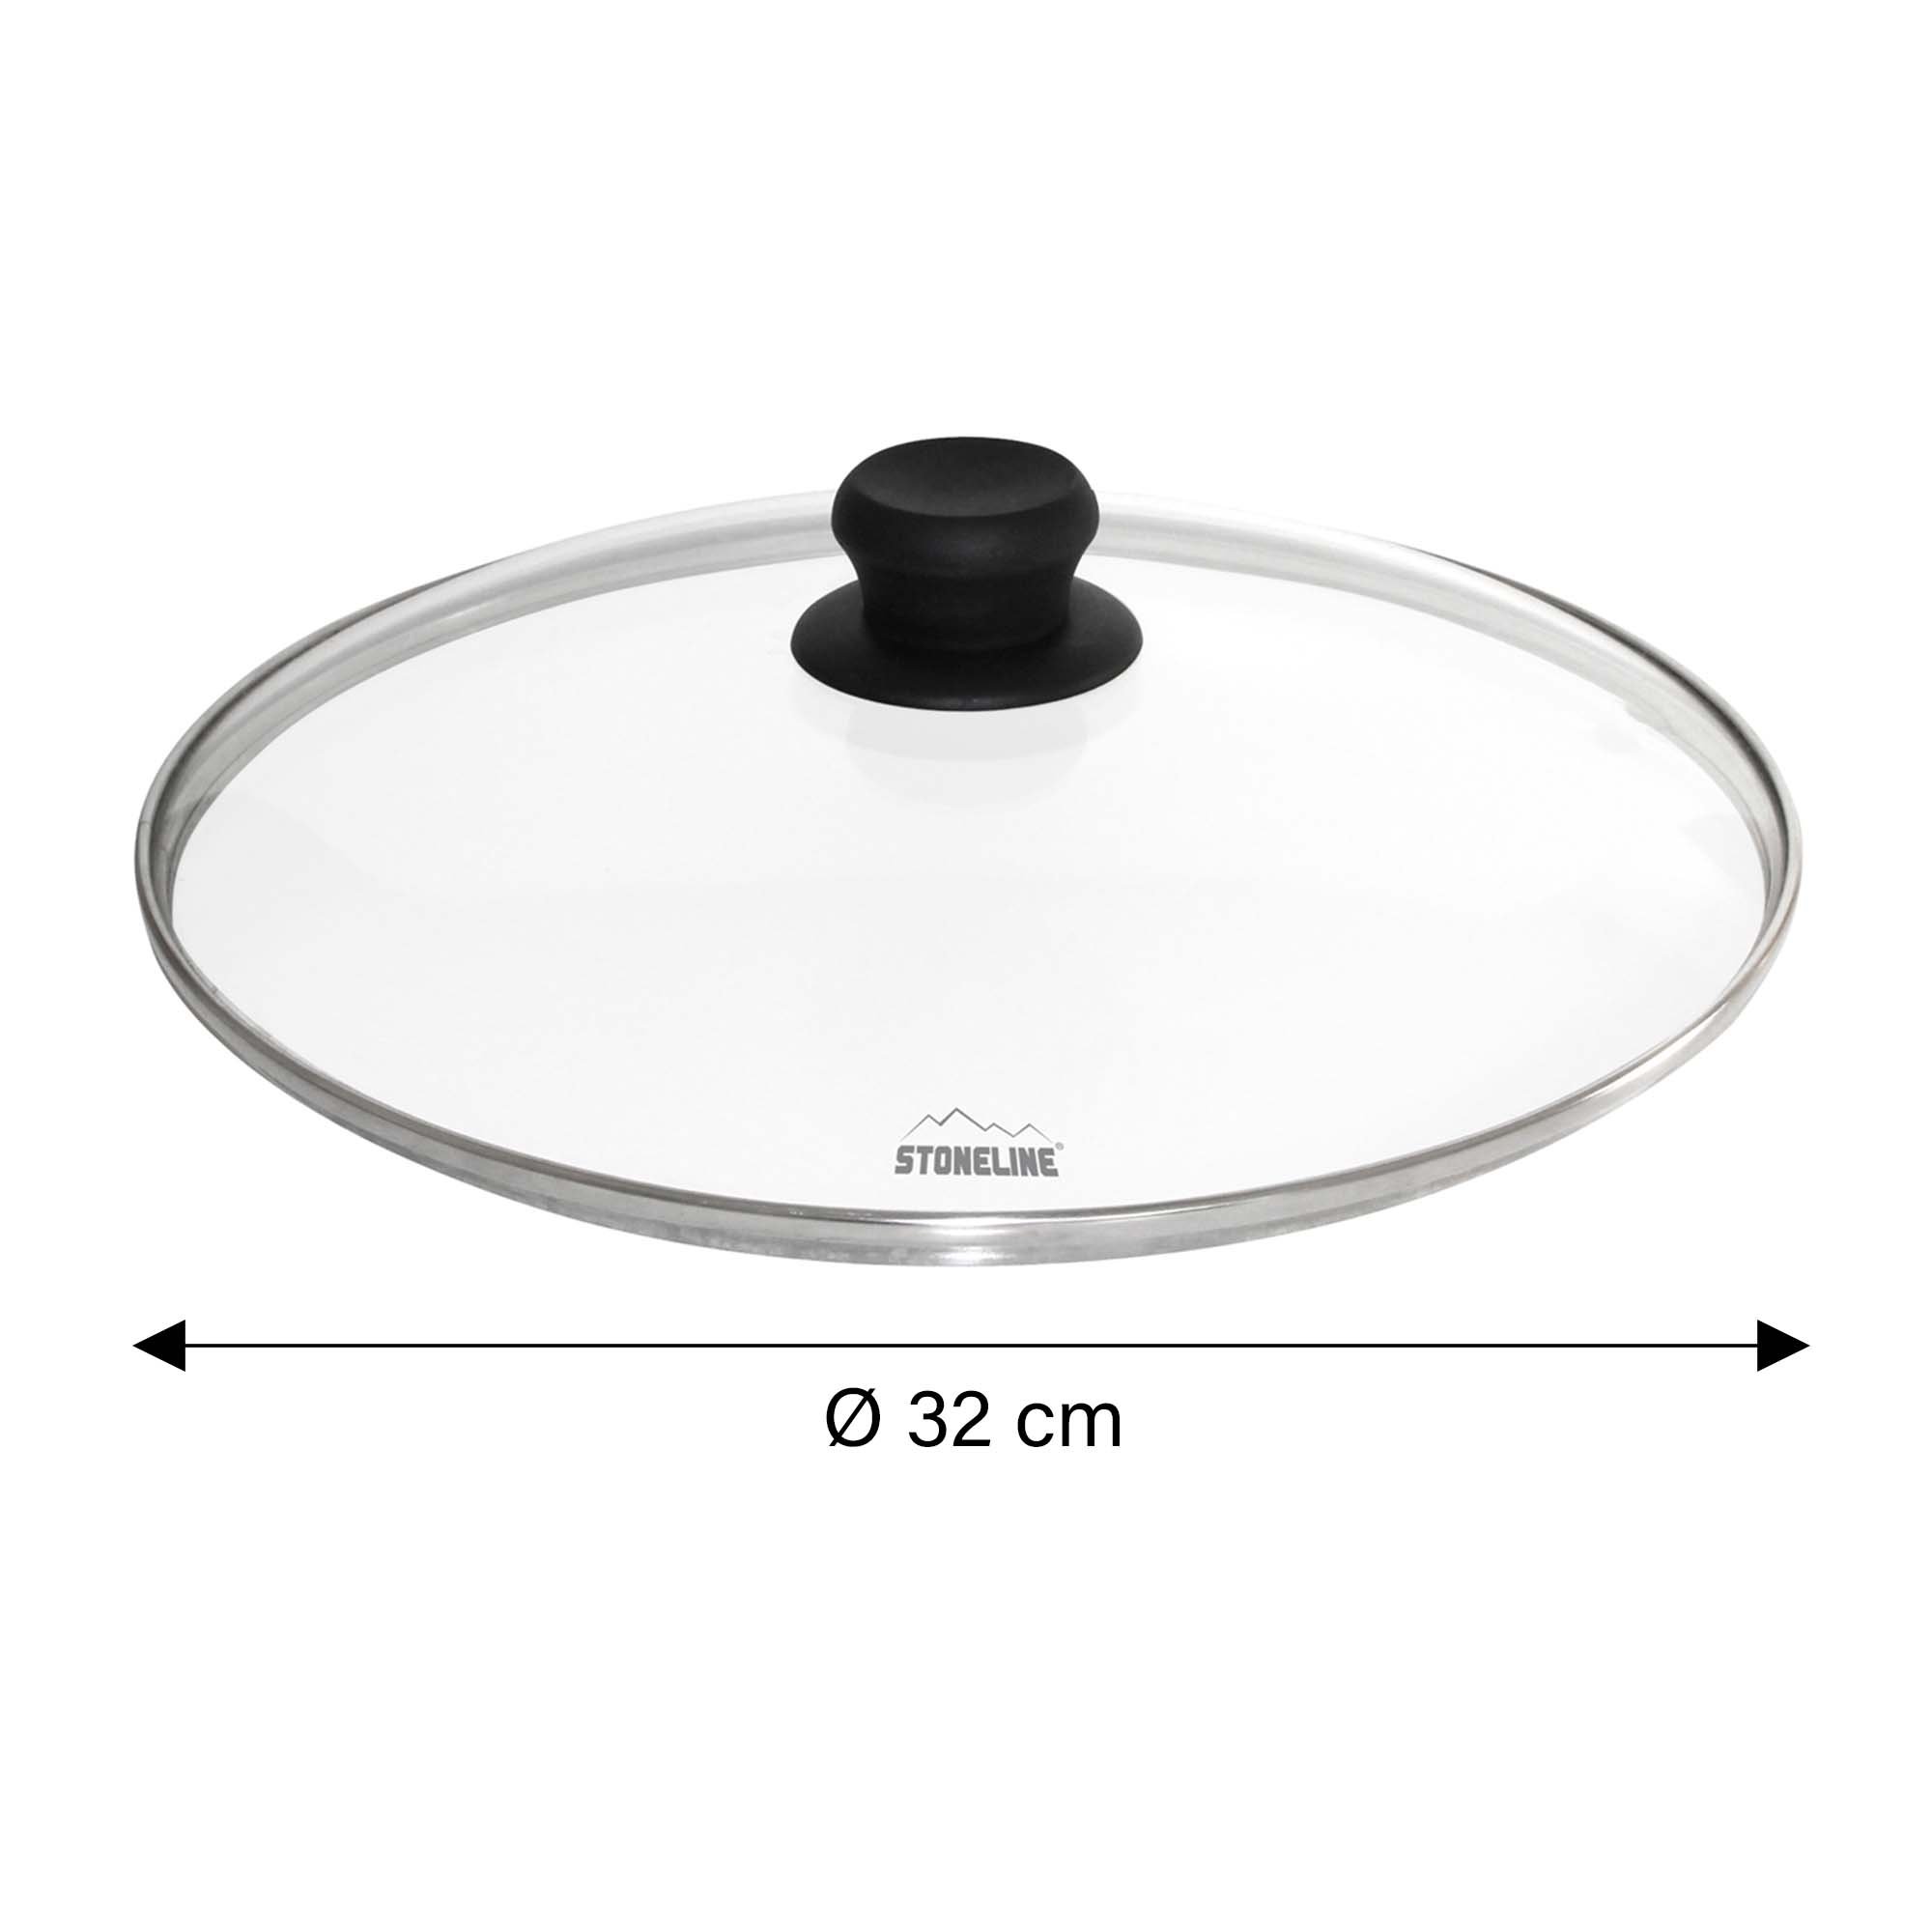 STONELINE® glass lid 32 cm